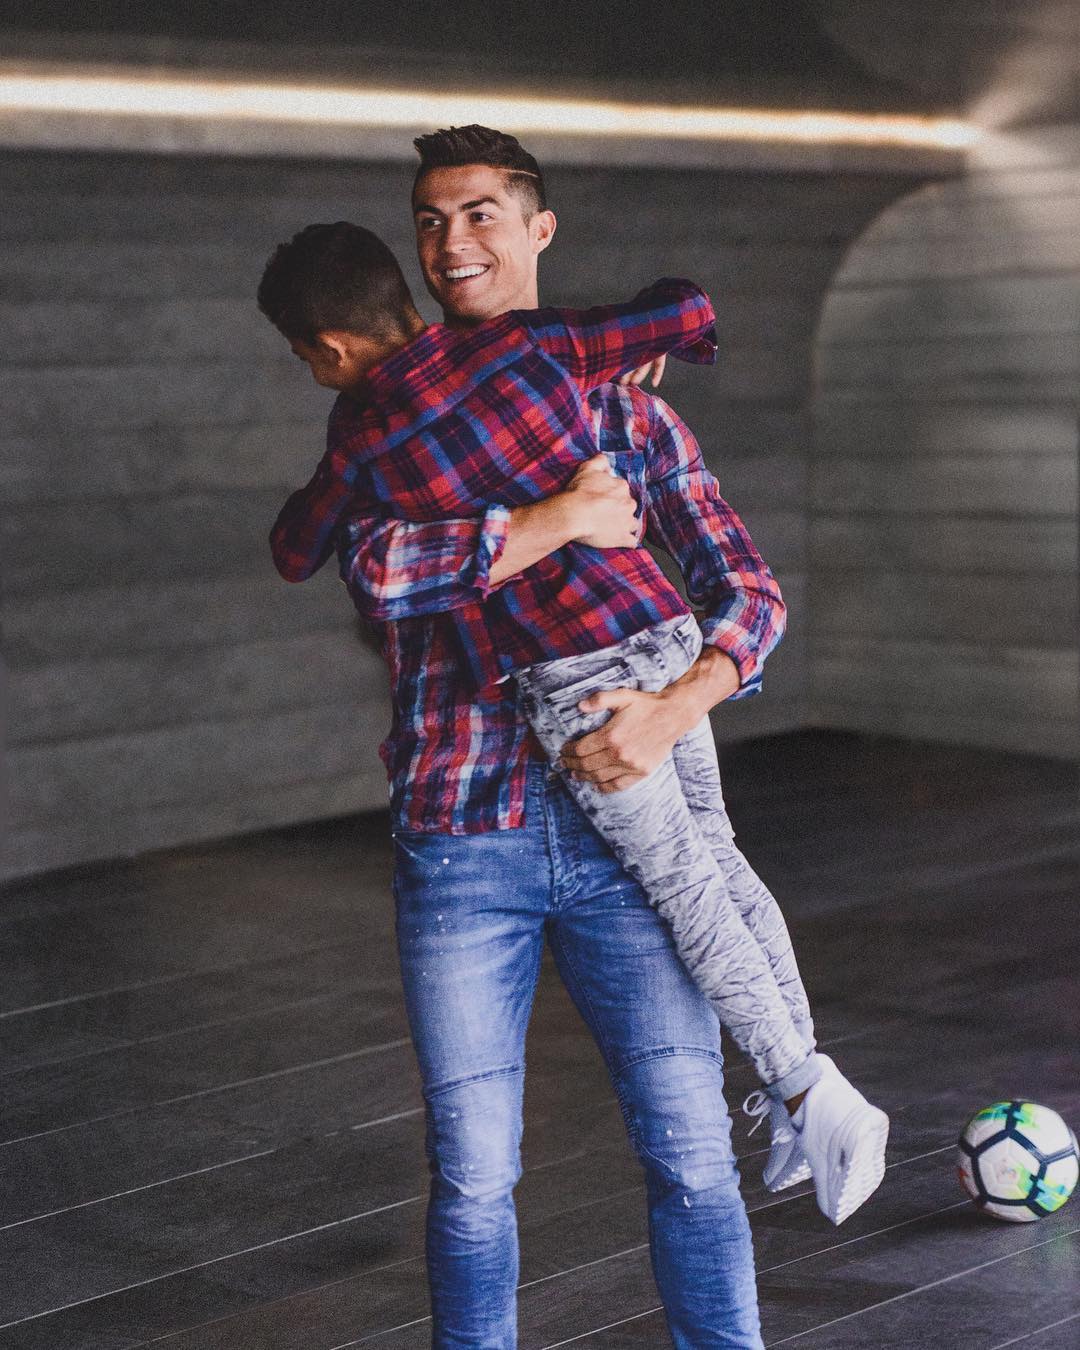 Créditos: Instagram Cristiano Ronaldo